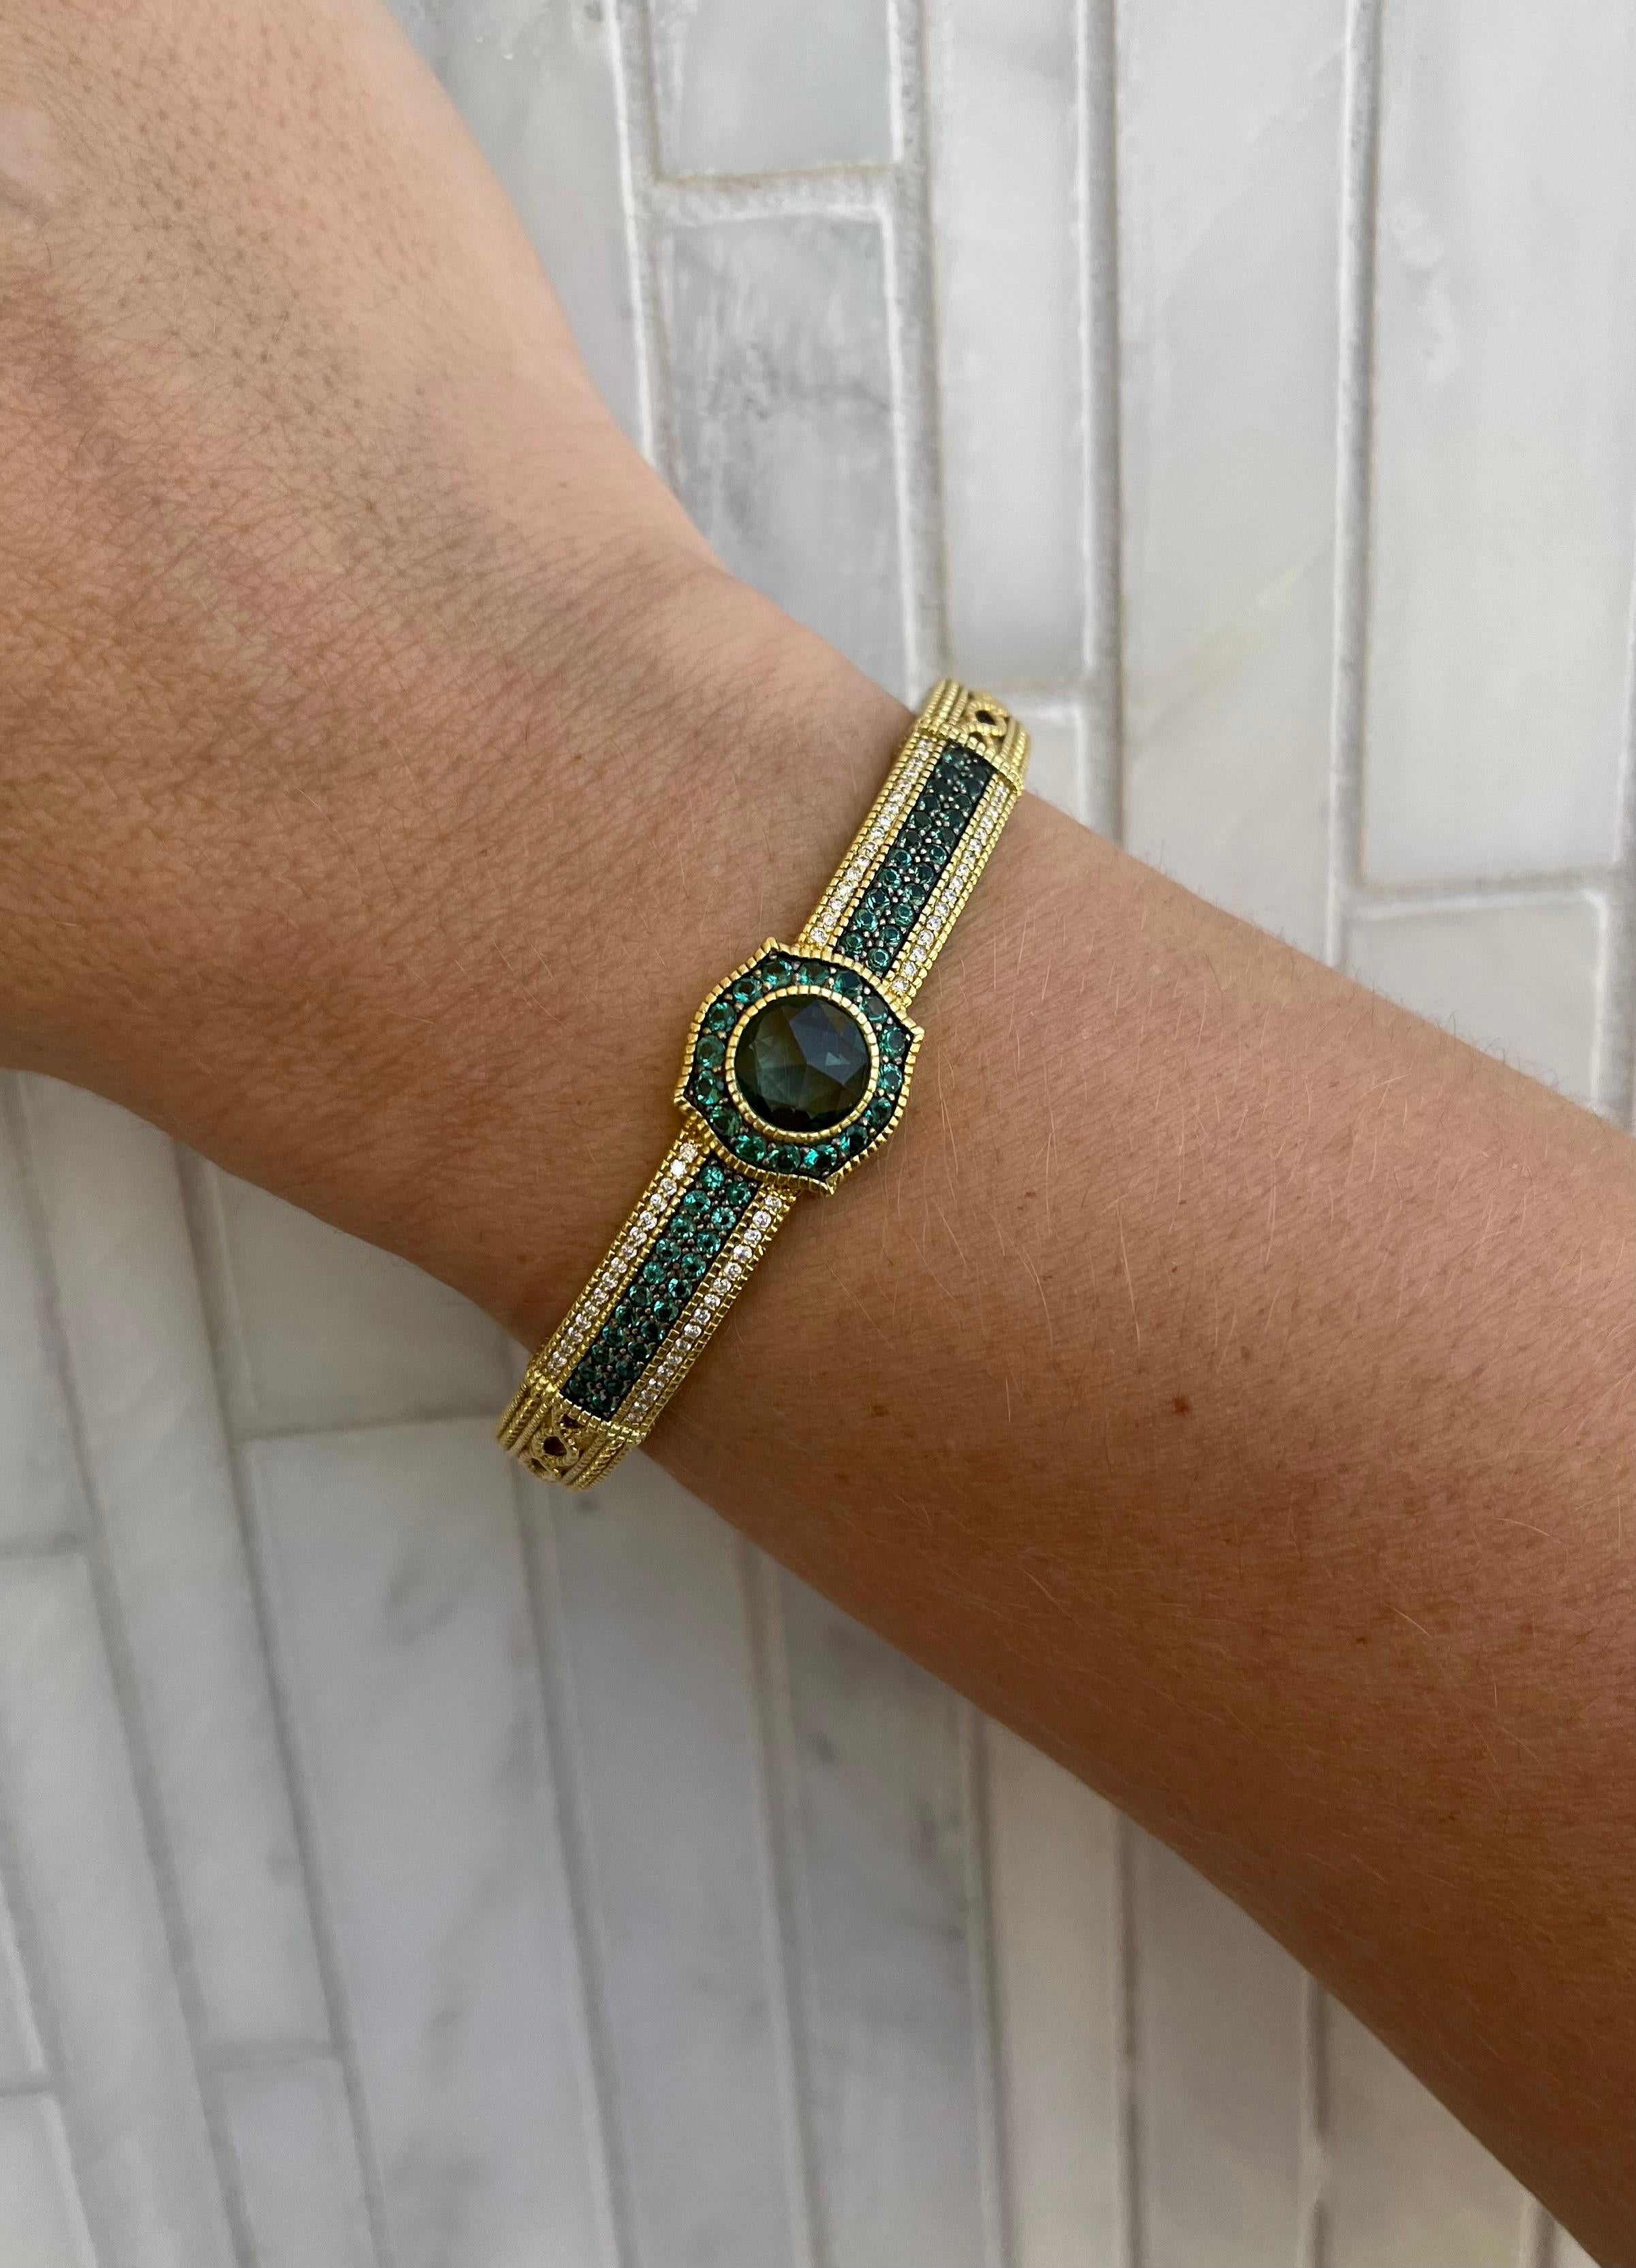 Élevez votre style avec l'exquis bracelet en saphir vert de Judith Ripka, un véritable chef-d'œuvre d'élégance et de luxe. Réalisé en or jaune 18 carats rayonnant, ce bracelet exsude un charme et une sophistication intemporels. La star du spectacle